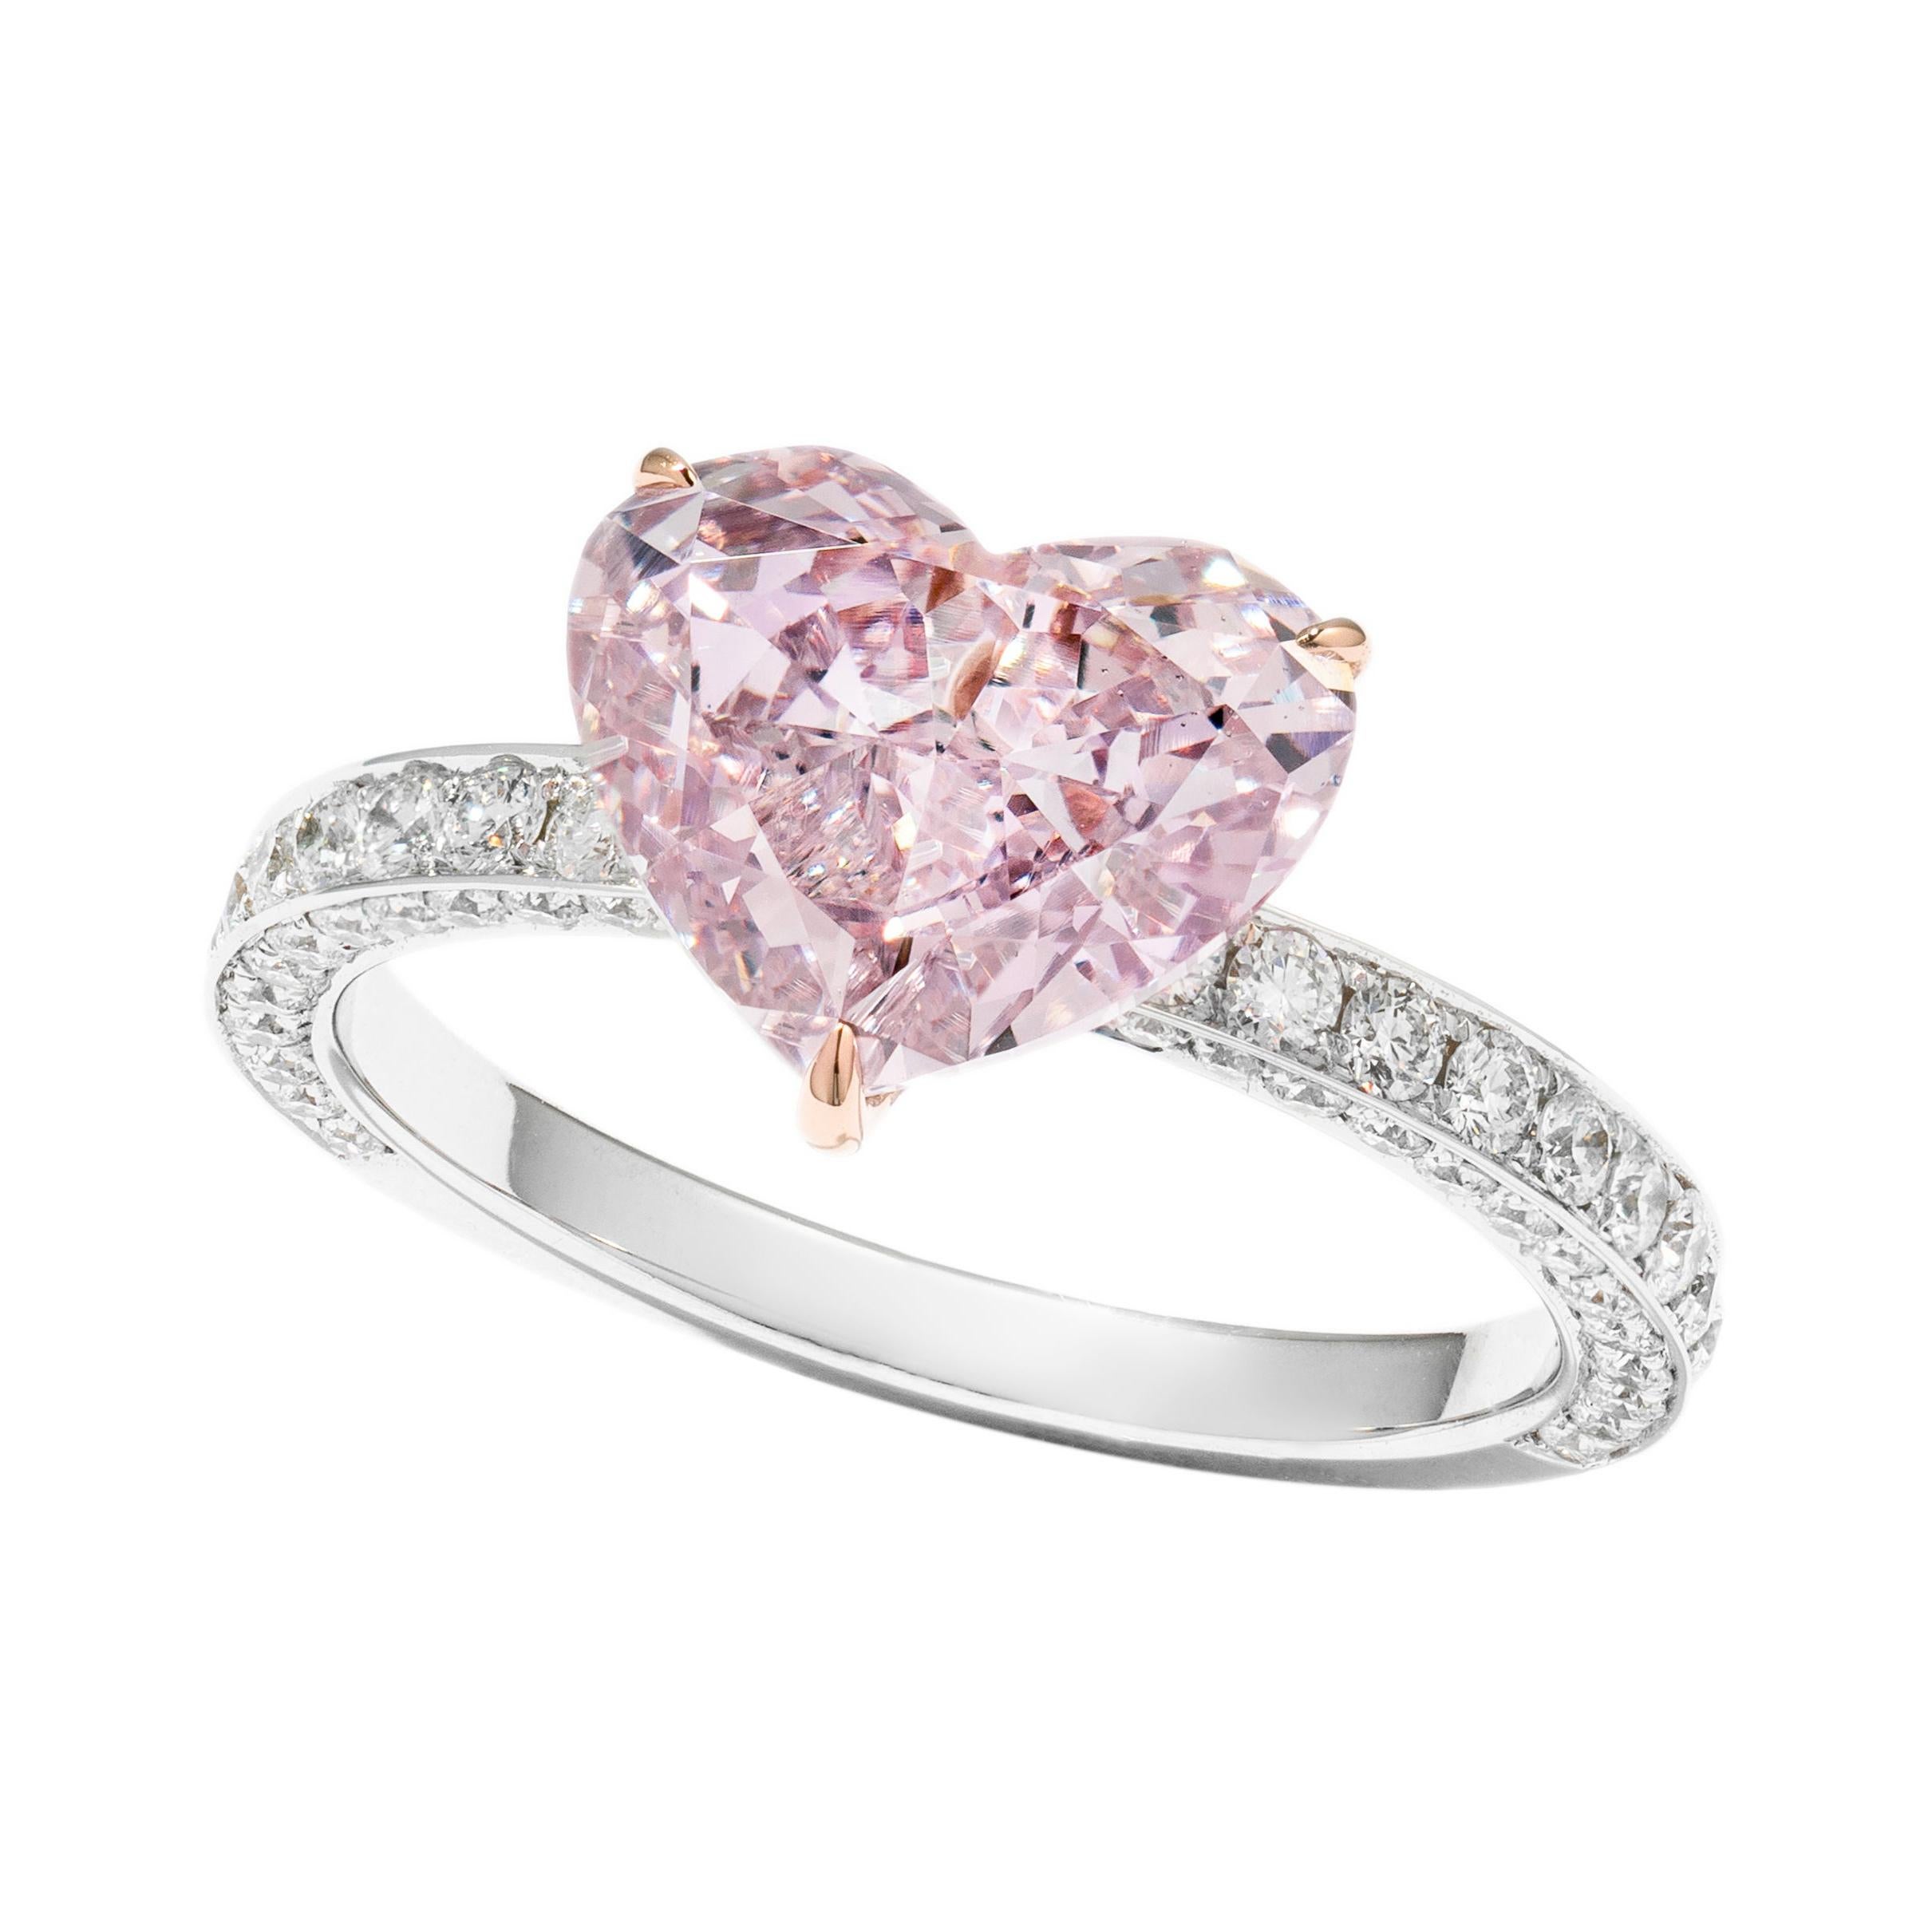 GIA Certified 3.15 Carat Fancy Pink Purple Heart Diamond Ring in 18k Rose Gold